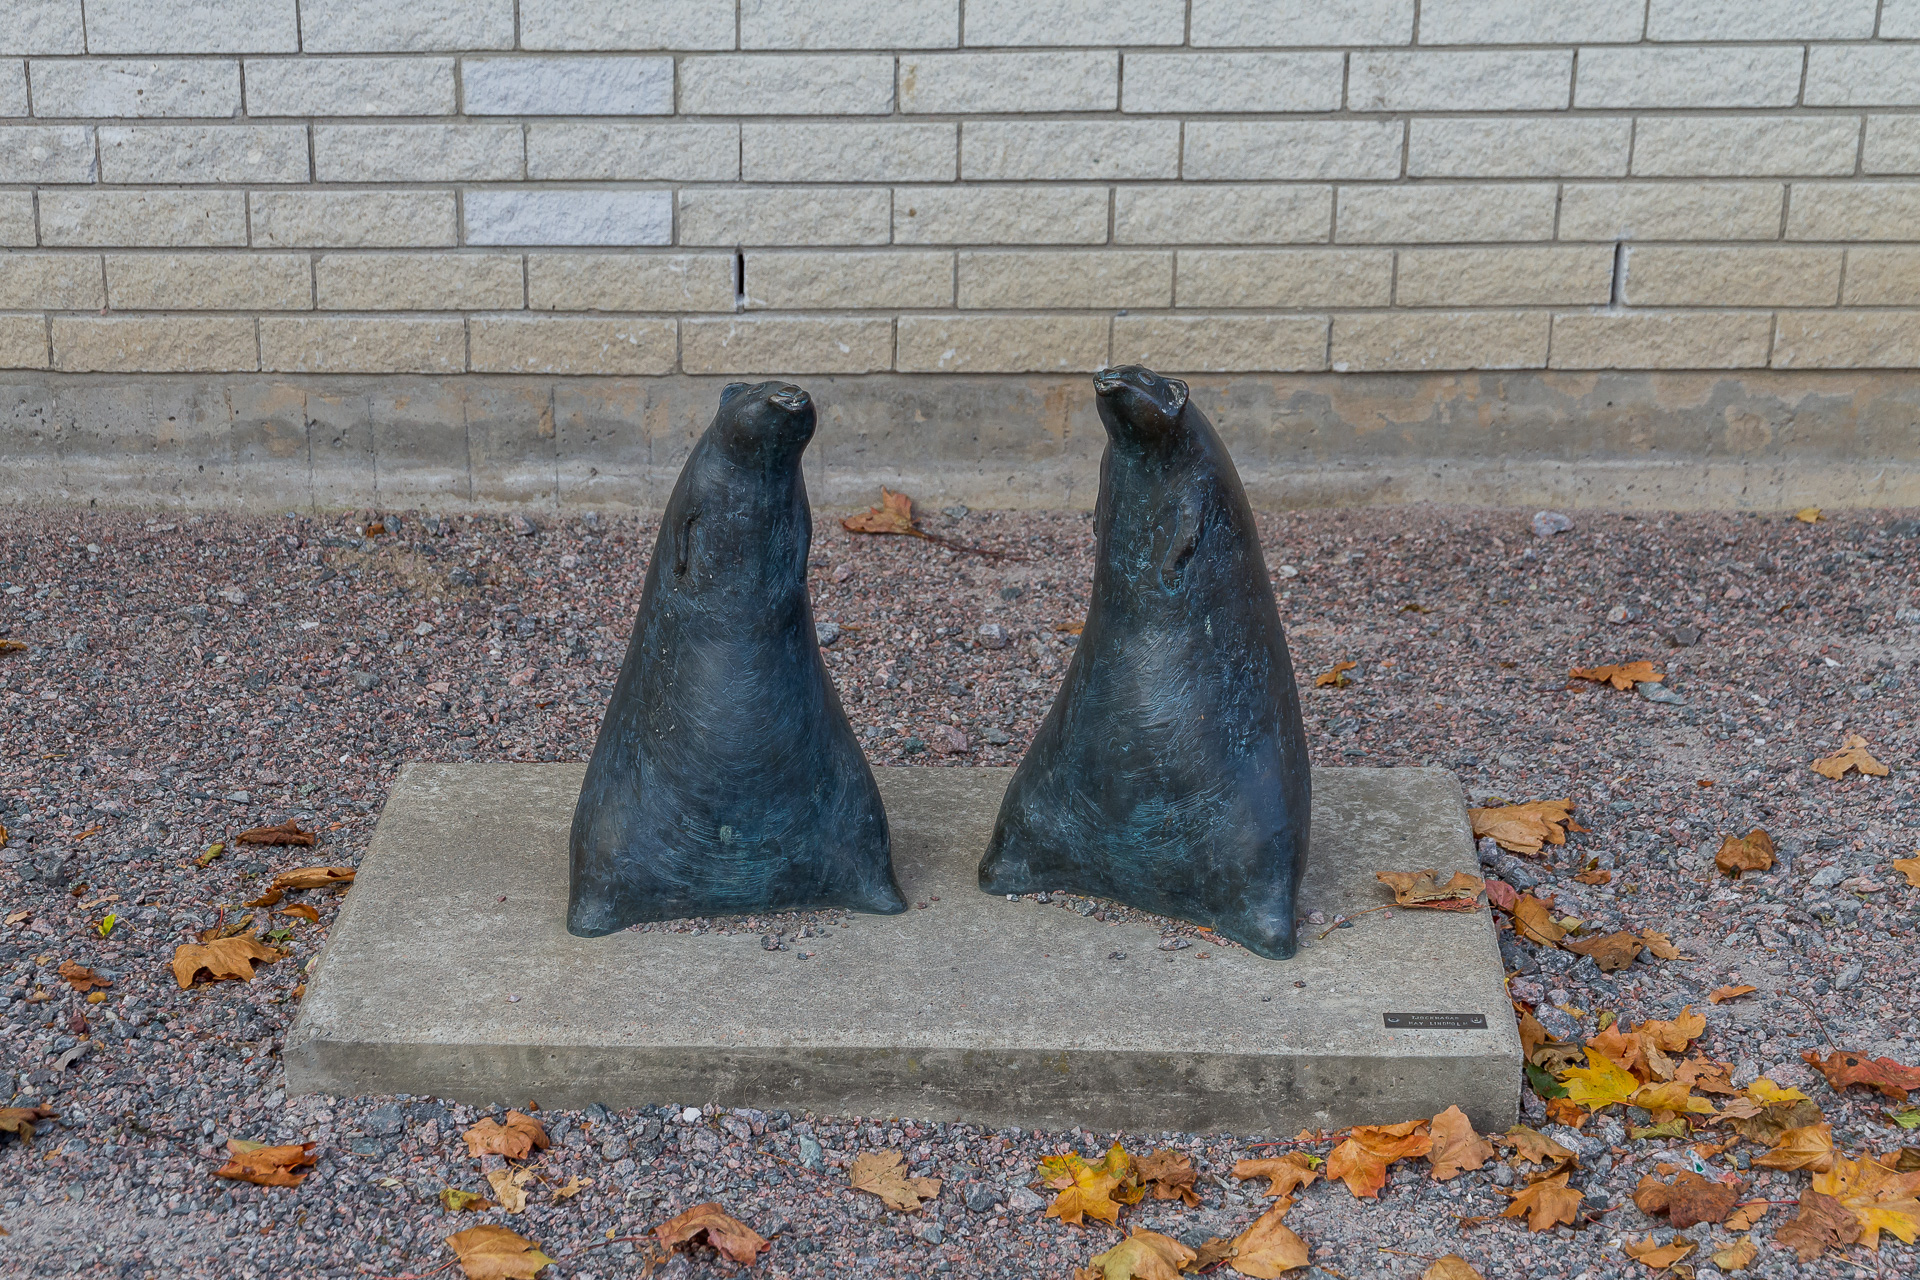 Två sälliknande figurer i mörkgrå brons står på sina knappt synliga bakben och blottar sina runda magar. 